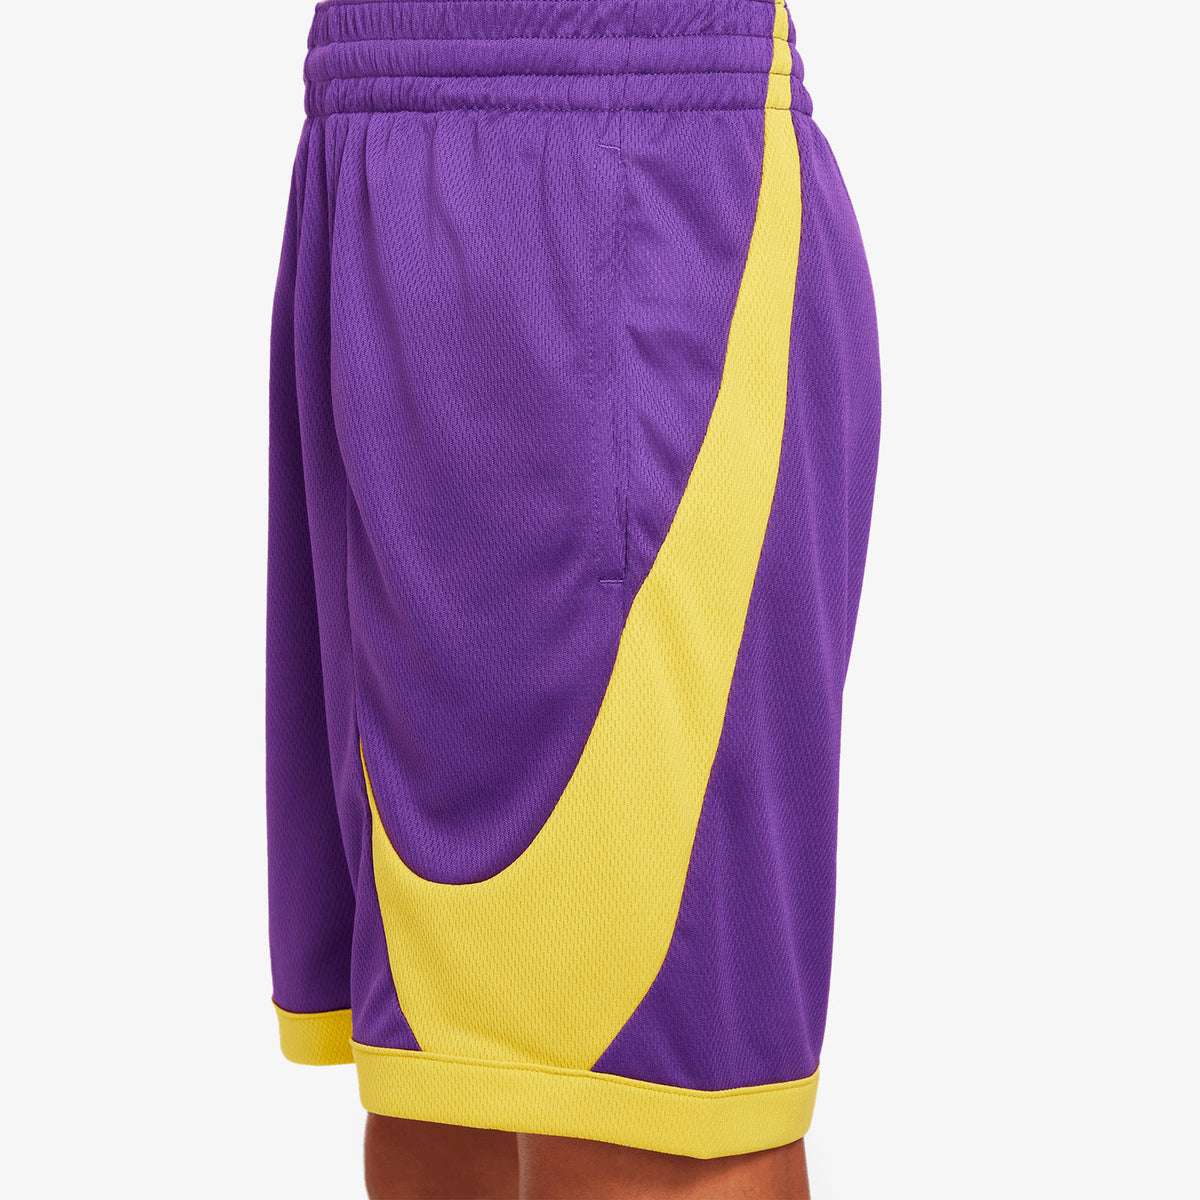 Nike Dri-FIT Youth Basketball Shorts - Purple